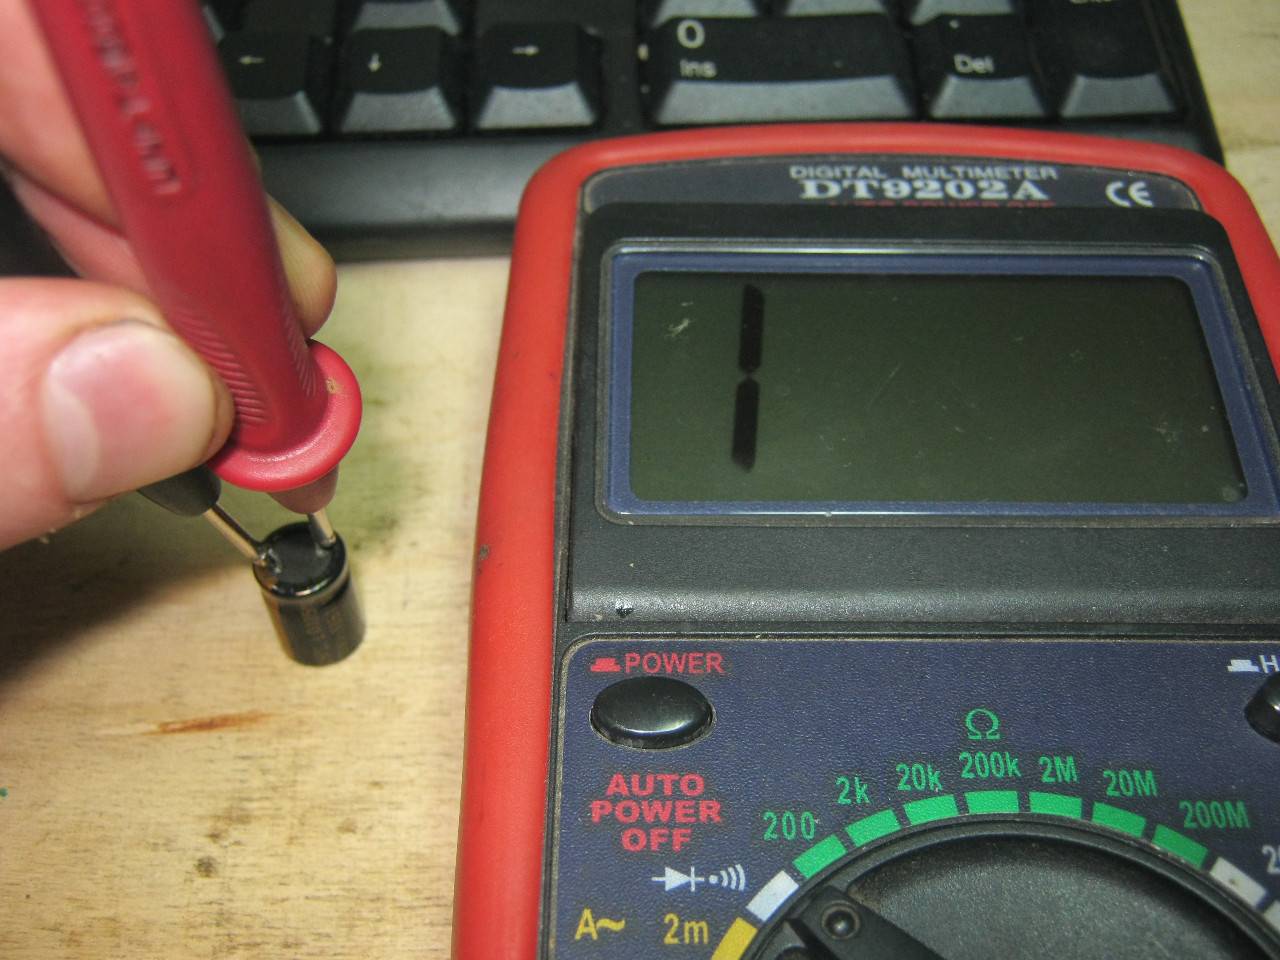 Как проверить конденсатор мультиметром на работоспособность: пошаговая инструкция, как прозвонить электролитический, пусковой конденсатор, не выпаивая